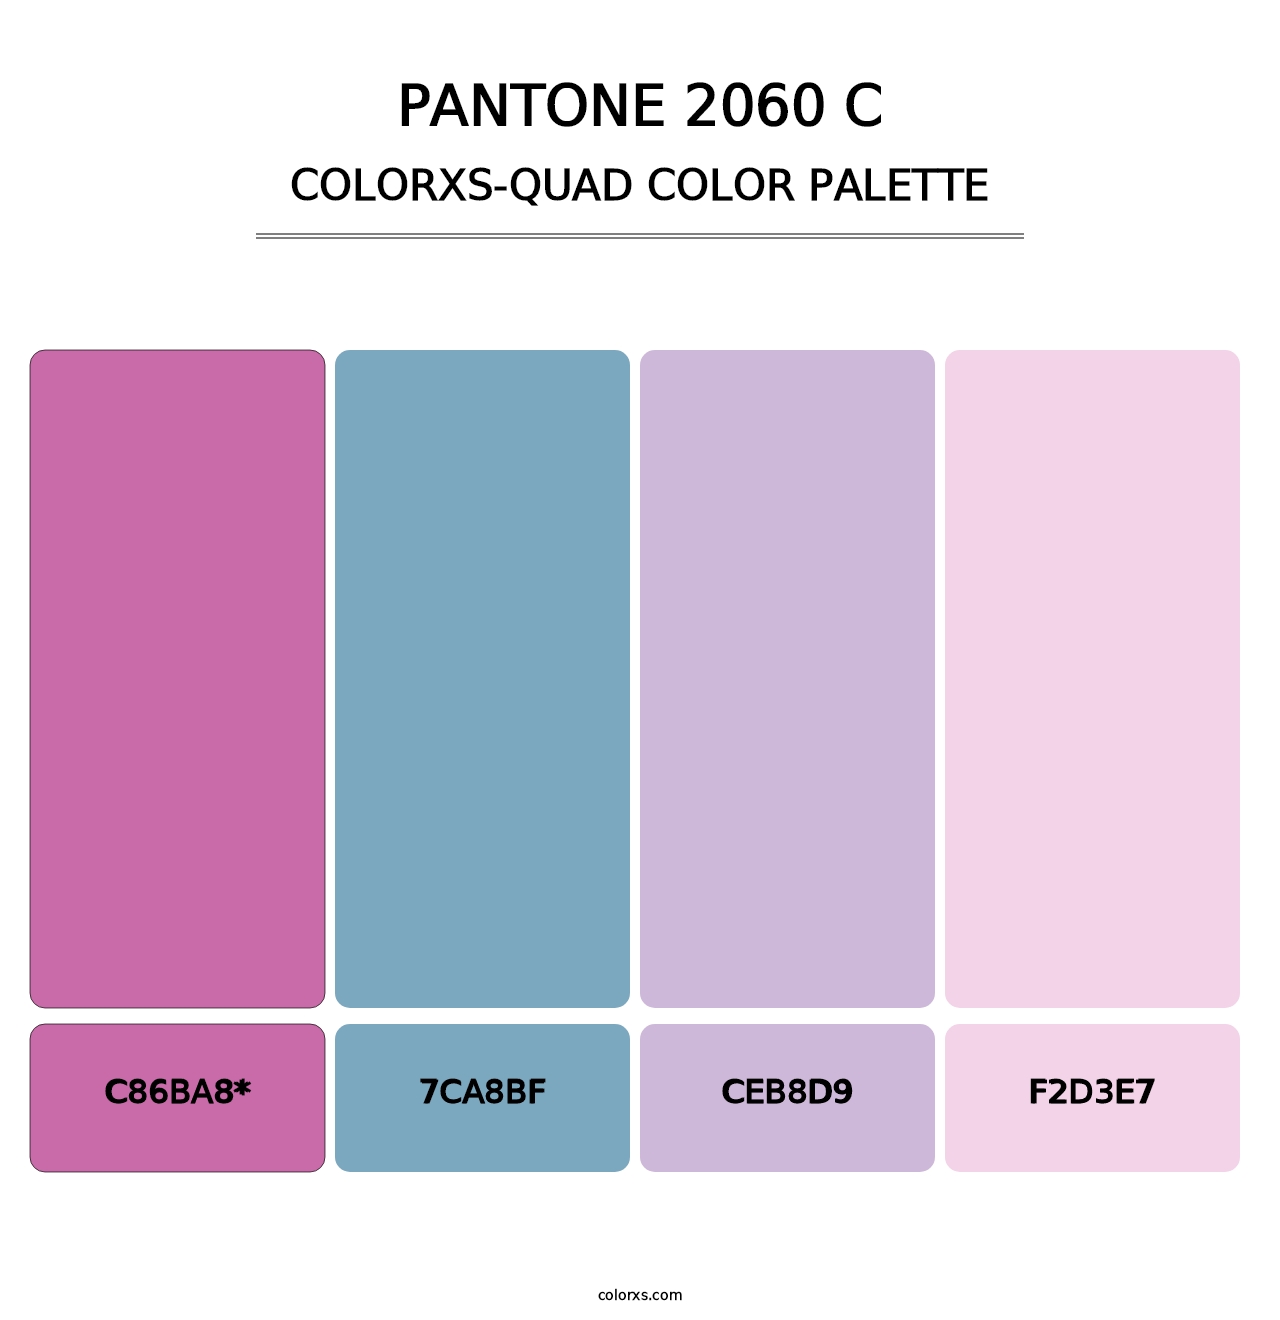 PANTONE 2060 C - Colorxs Quad Palette